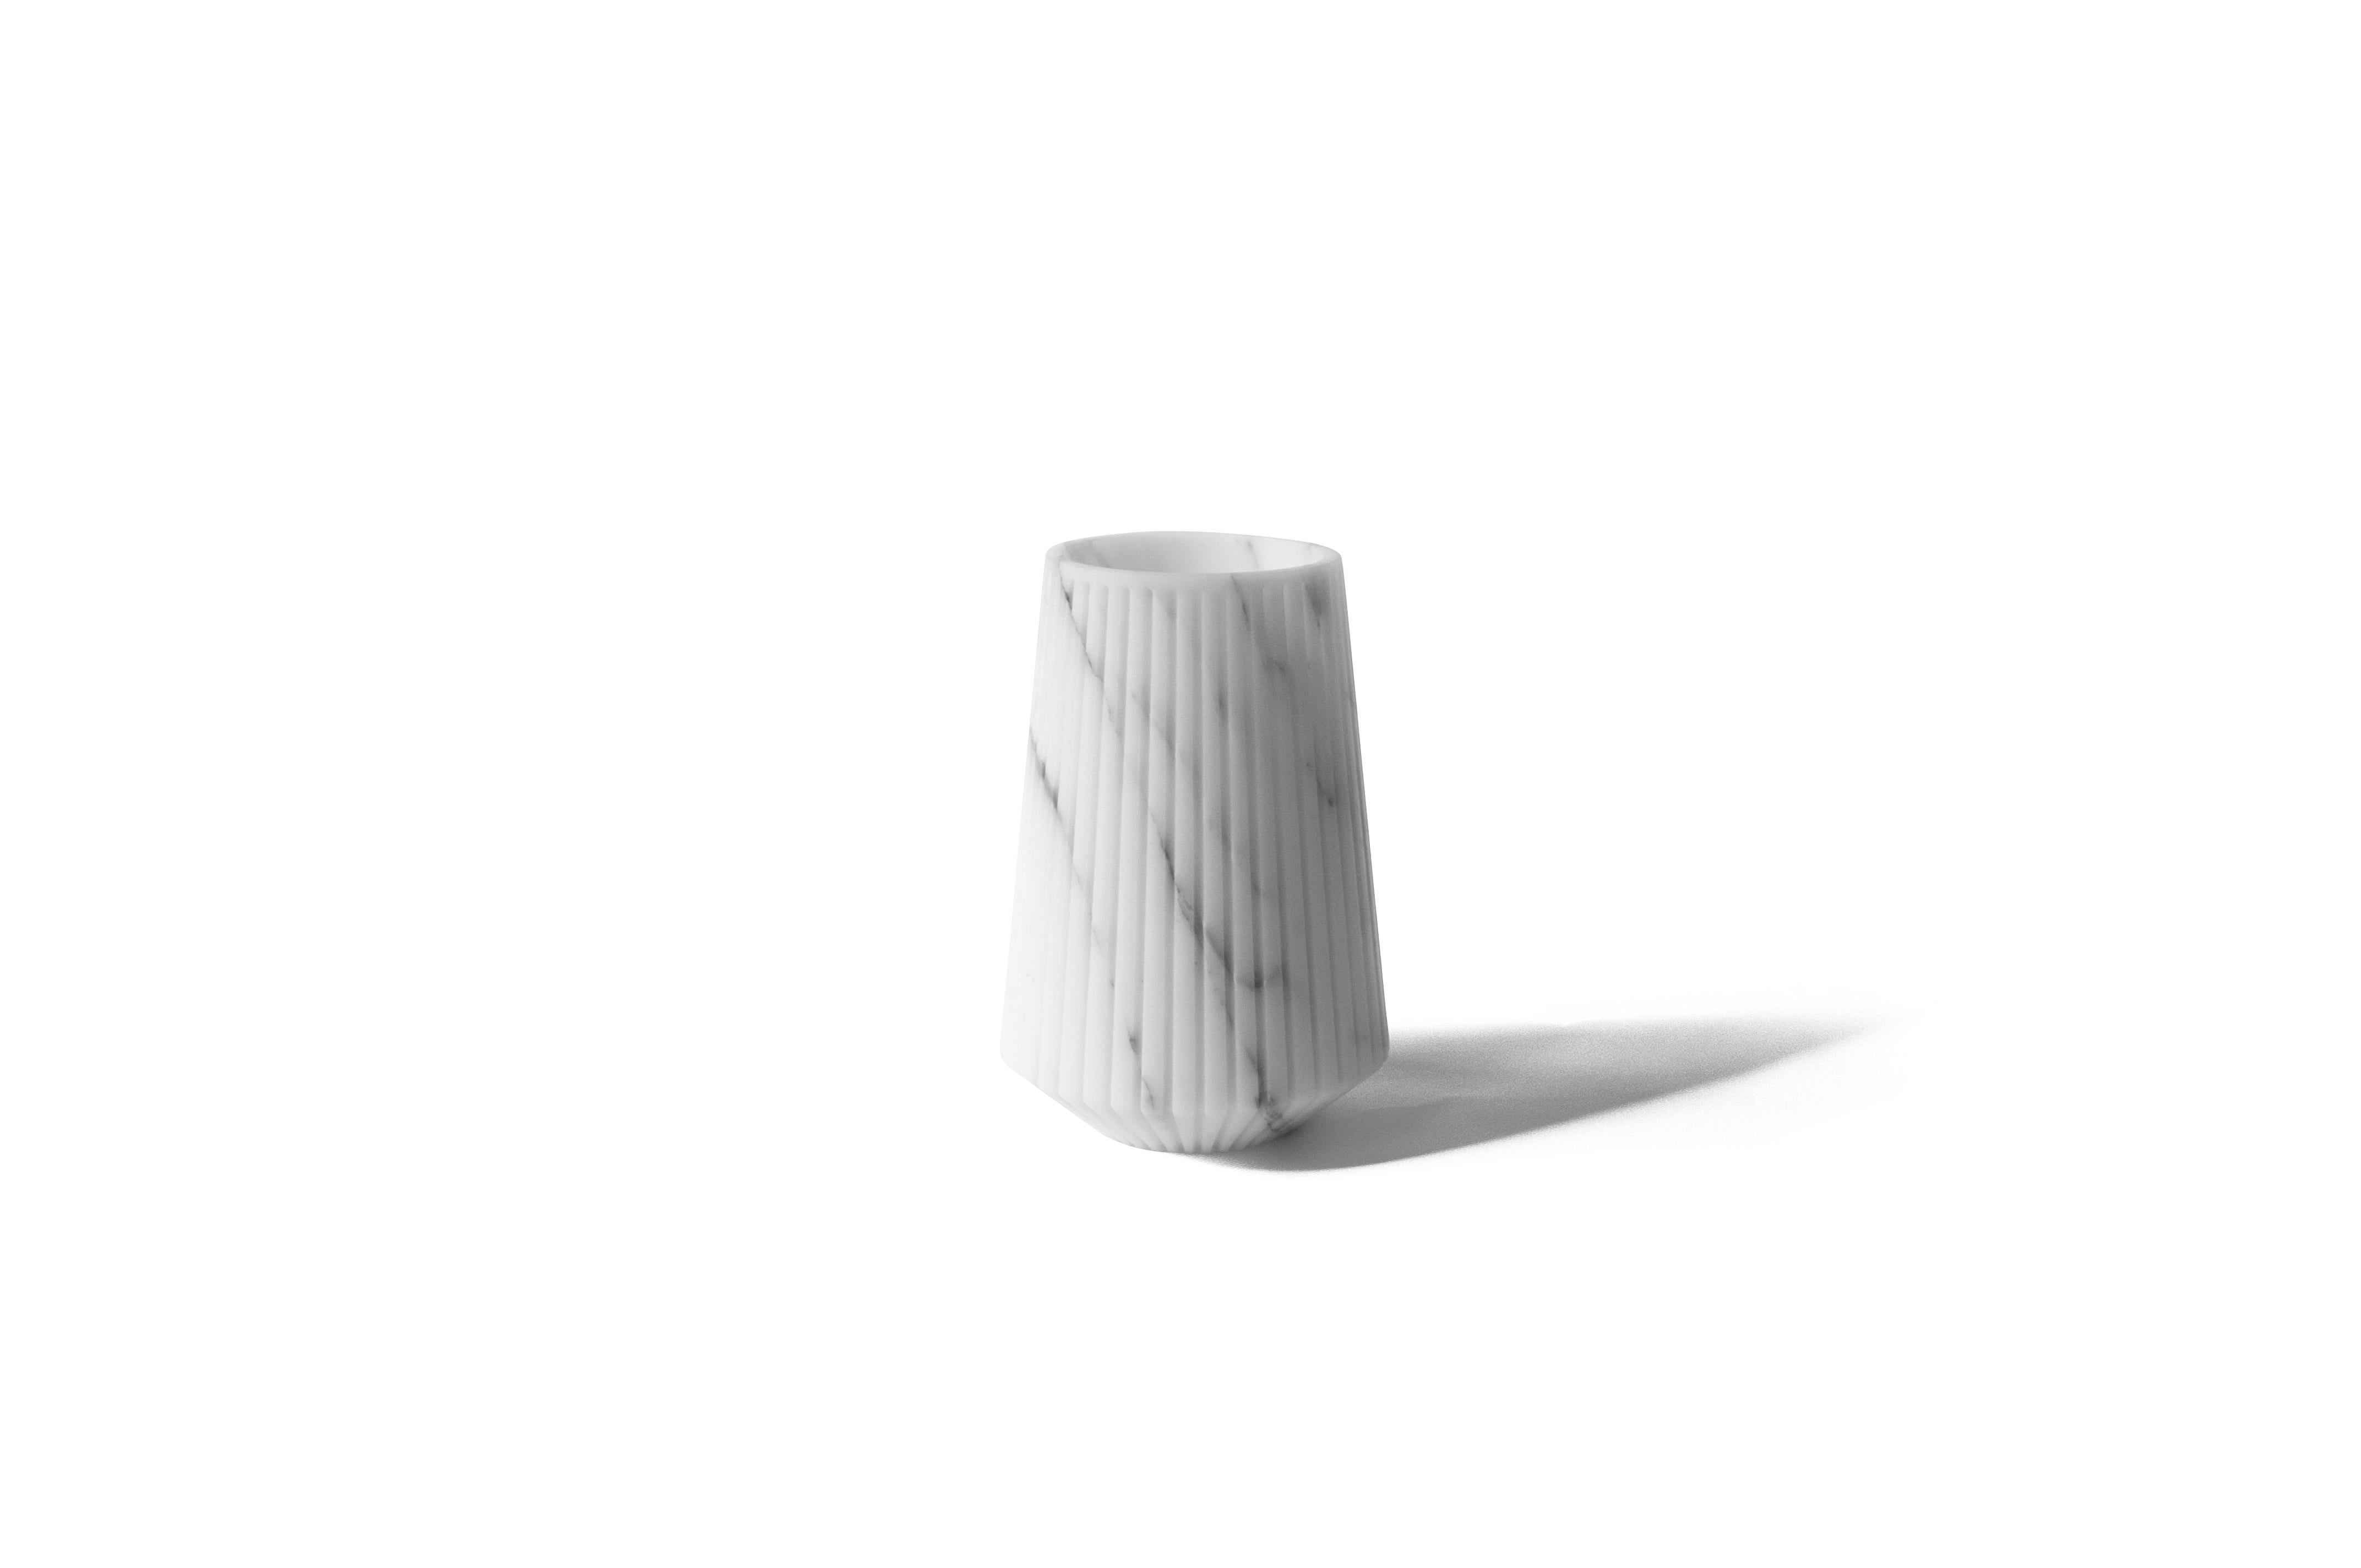 Gestreifte mittlere Vase aus weißem Carrara-Marmor.
-Jacopo Simonetti Entwurf für FiammettaV-
Jedes Stück ist ein Unikat (jeder Marmorblock hat eine andere Maserung und Schattierung) und wird von italienischen Handwerkern, die seit Generationen